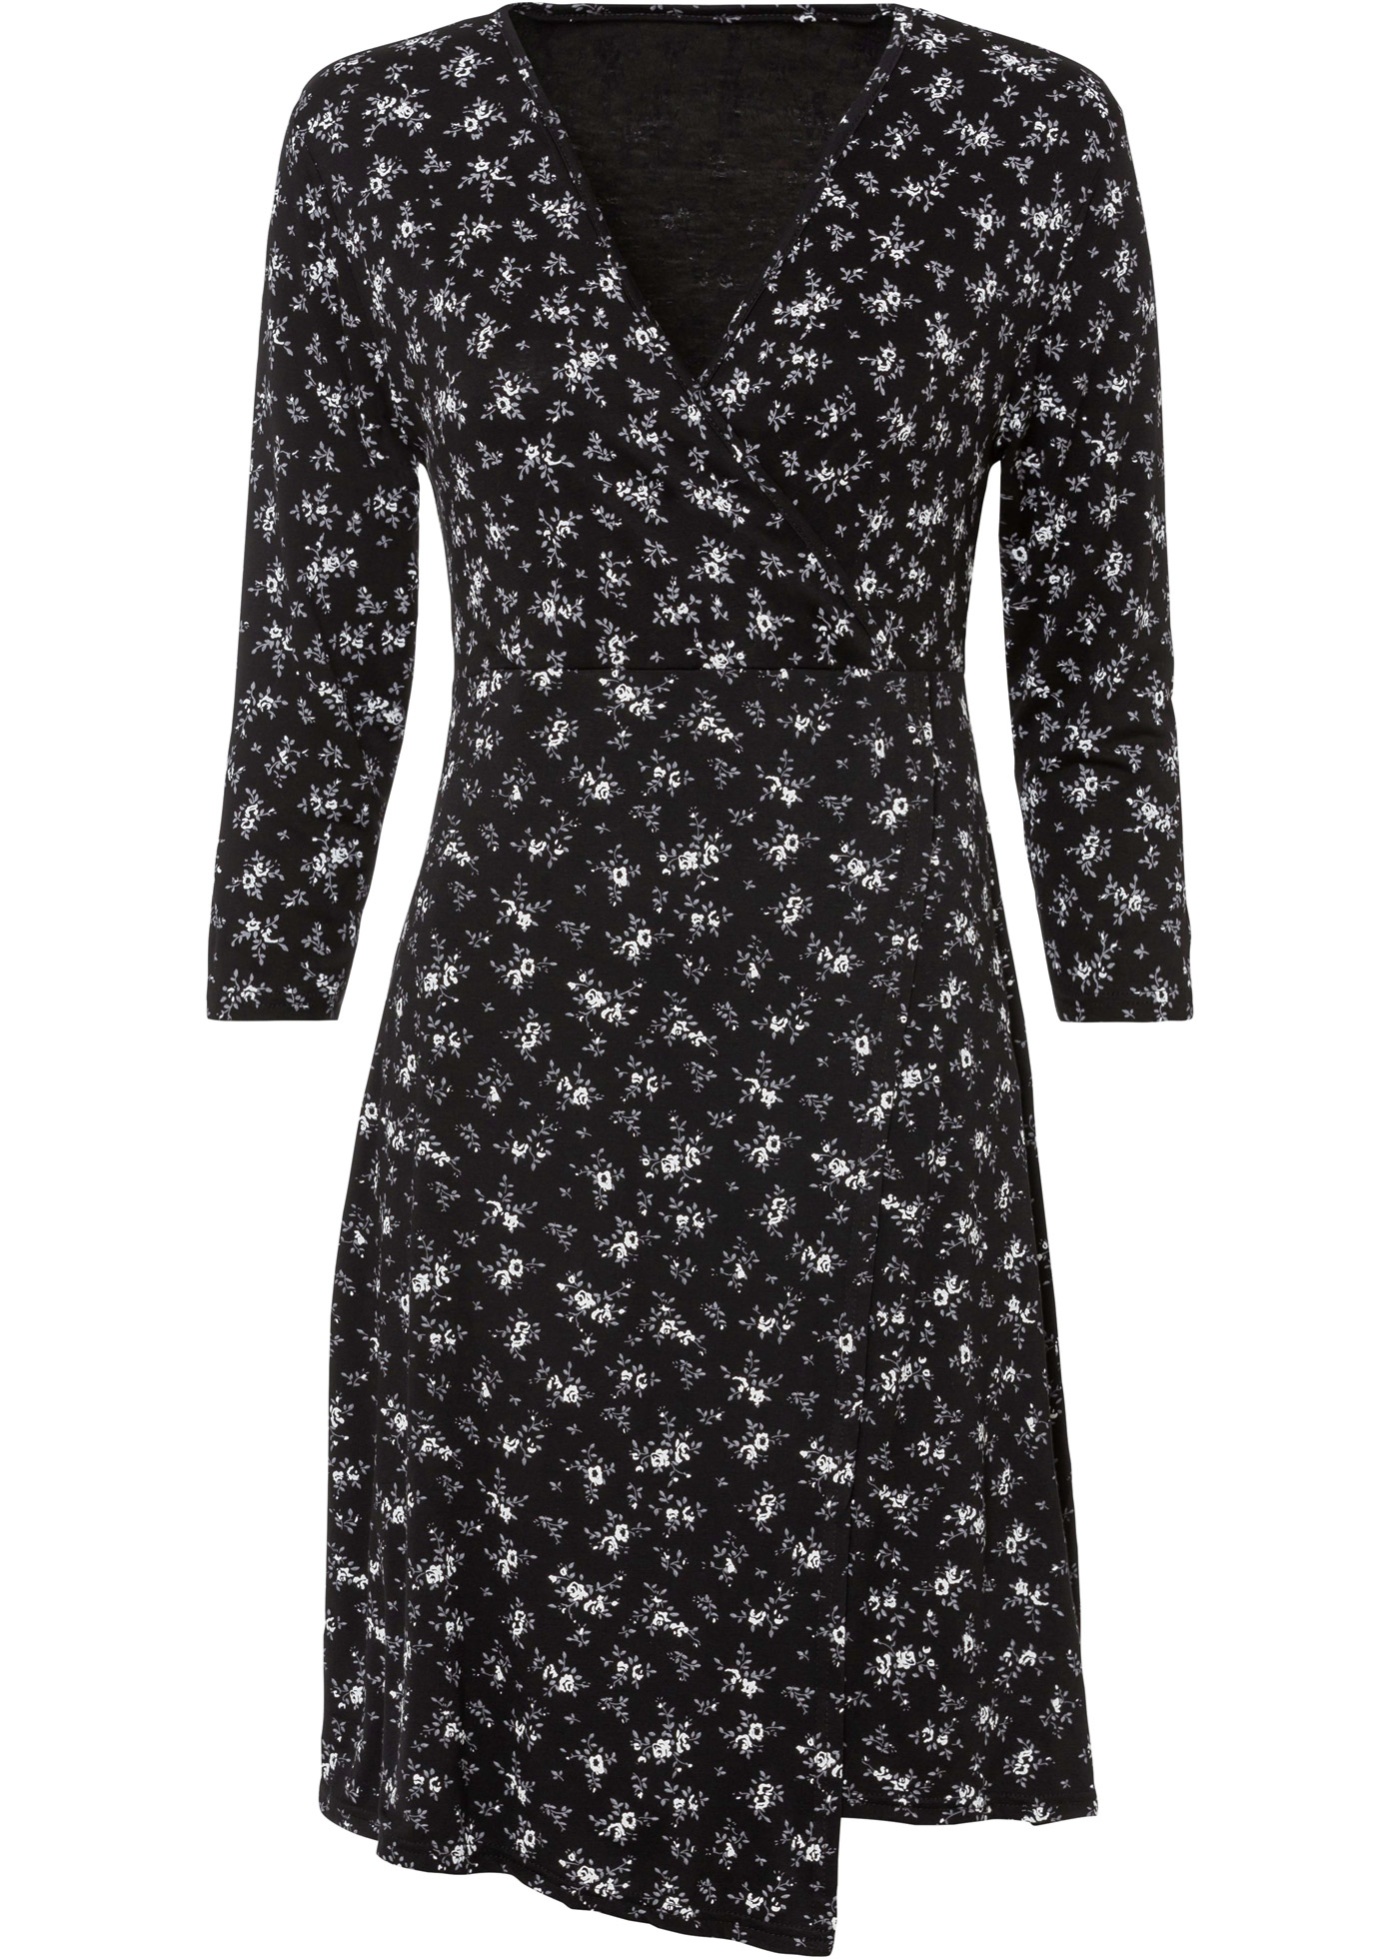 Modernes Kleid mit tiefem V-Ausschnitt und schönem Druck (90357695) in schwarz geblümt